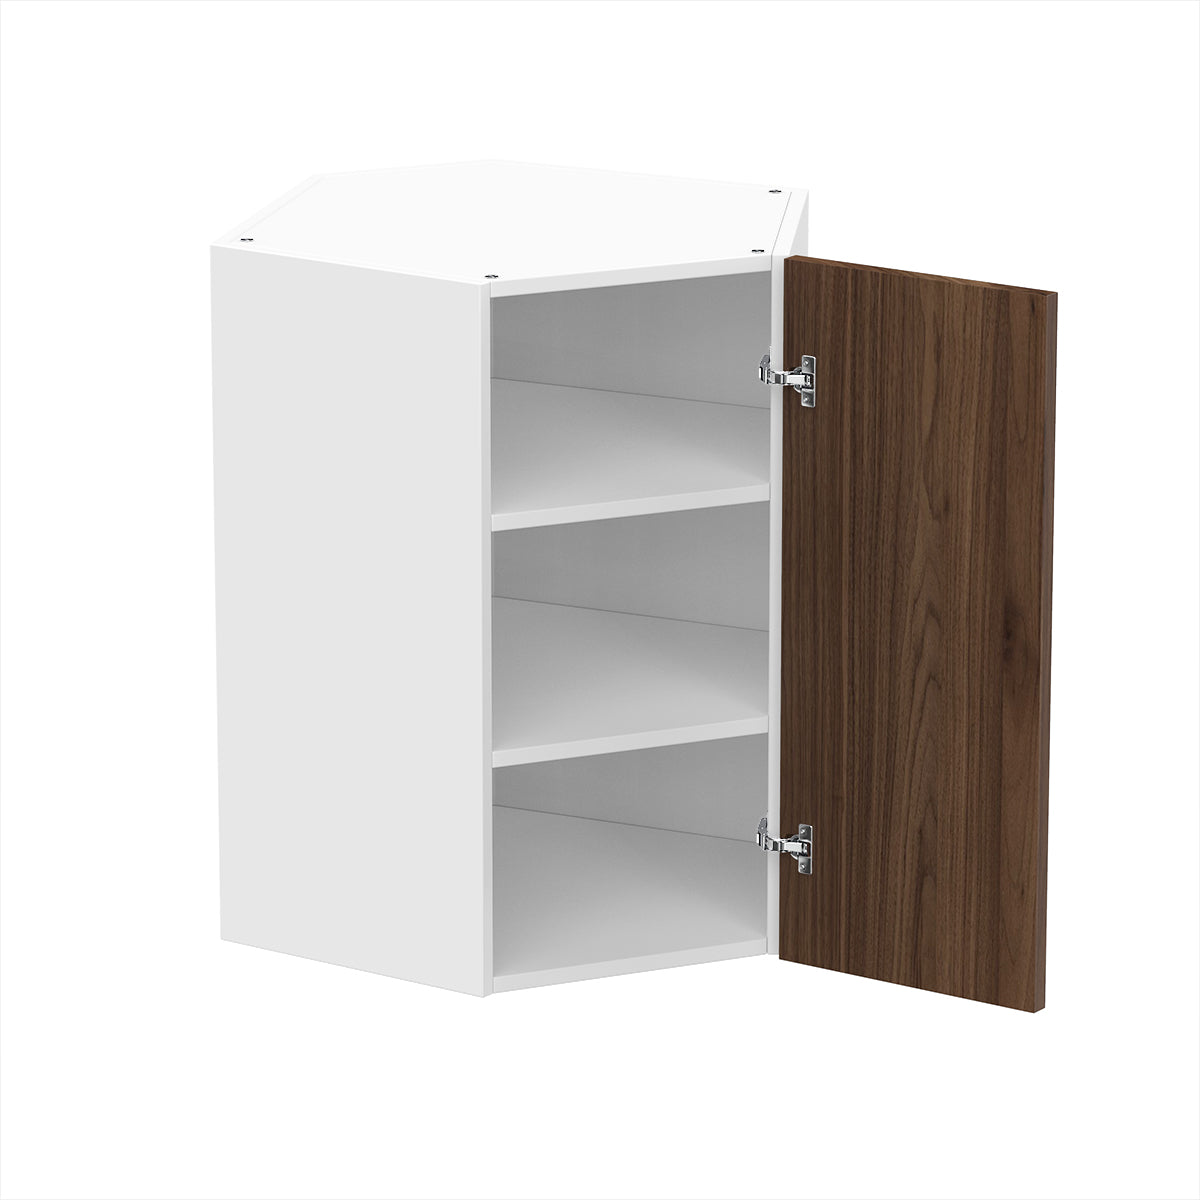 RTA - Walnut - Diagonal Wall Cabinets | 24"W x 30"H x 12"D